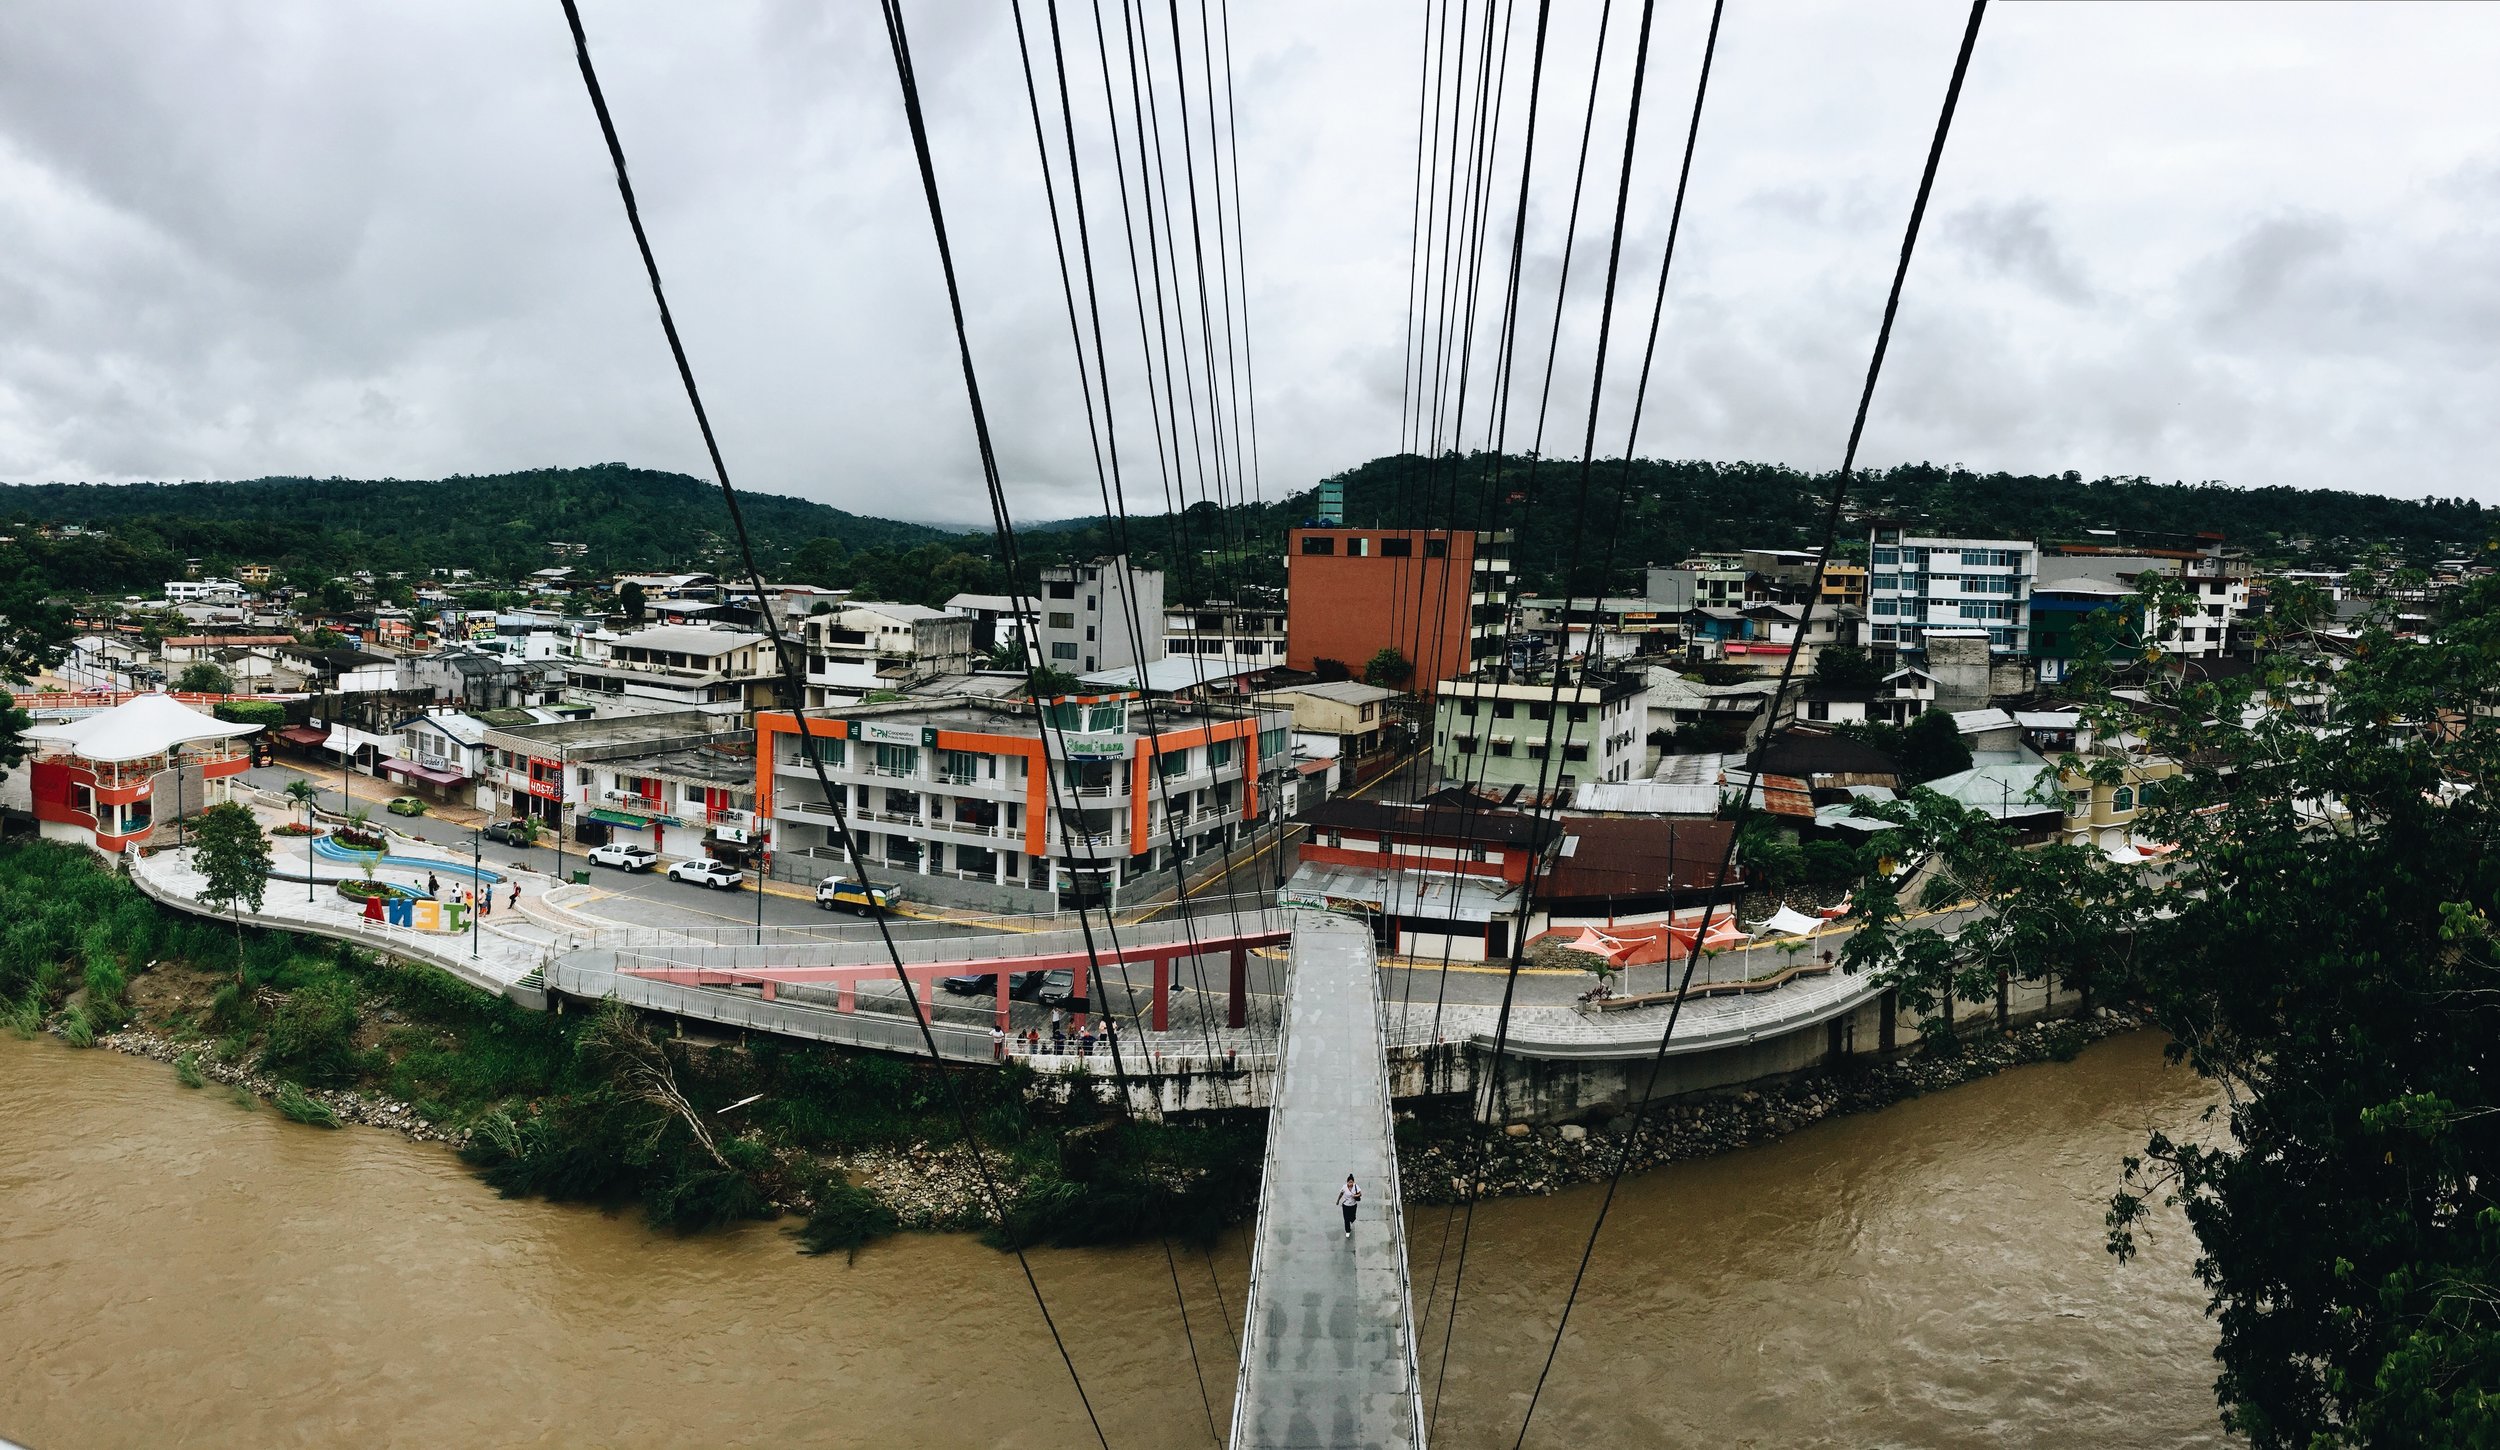 Tena, Napo, Ecuador